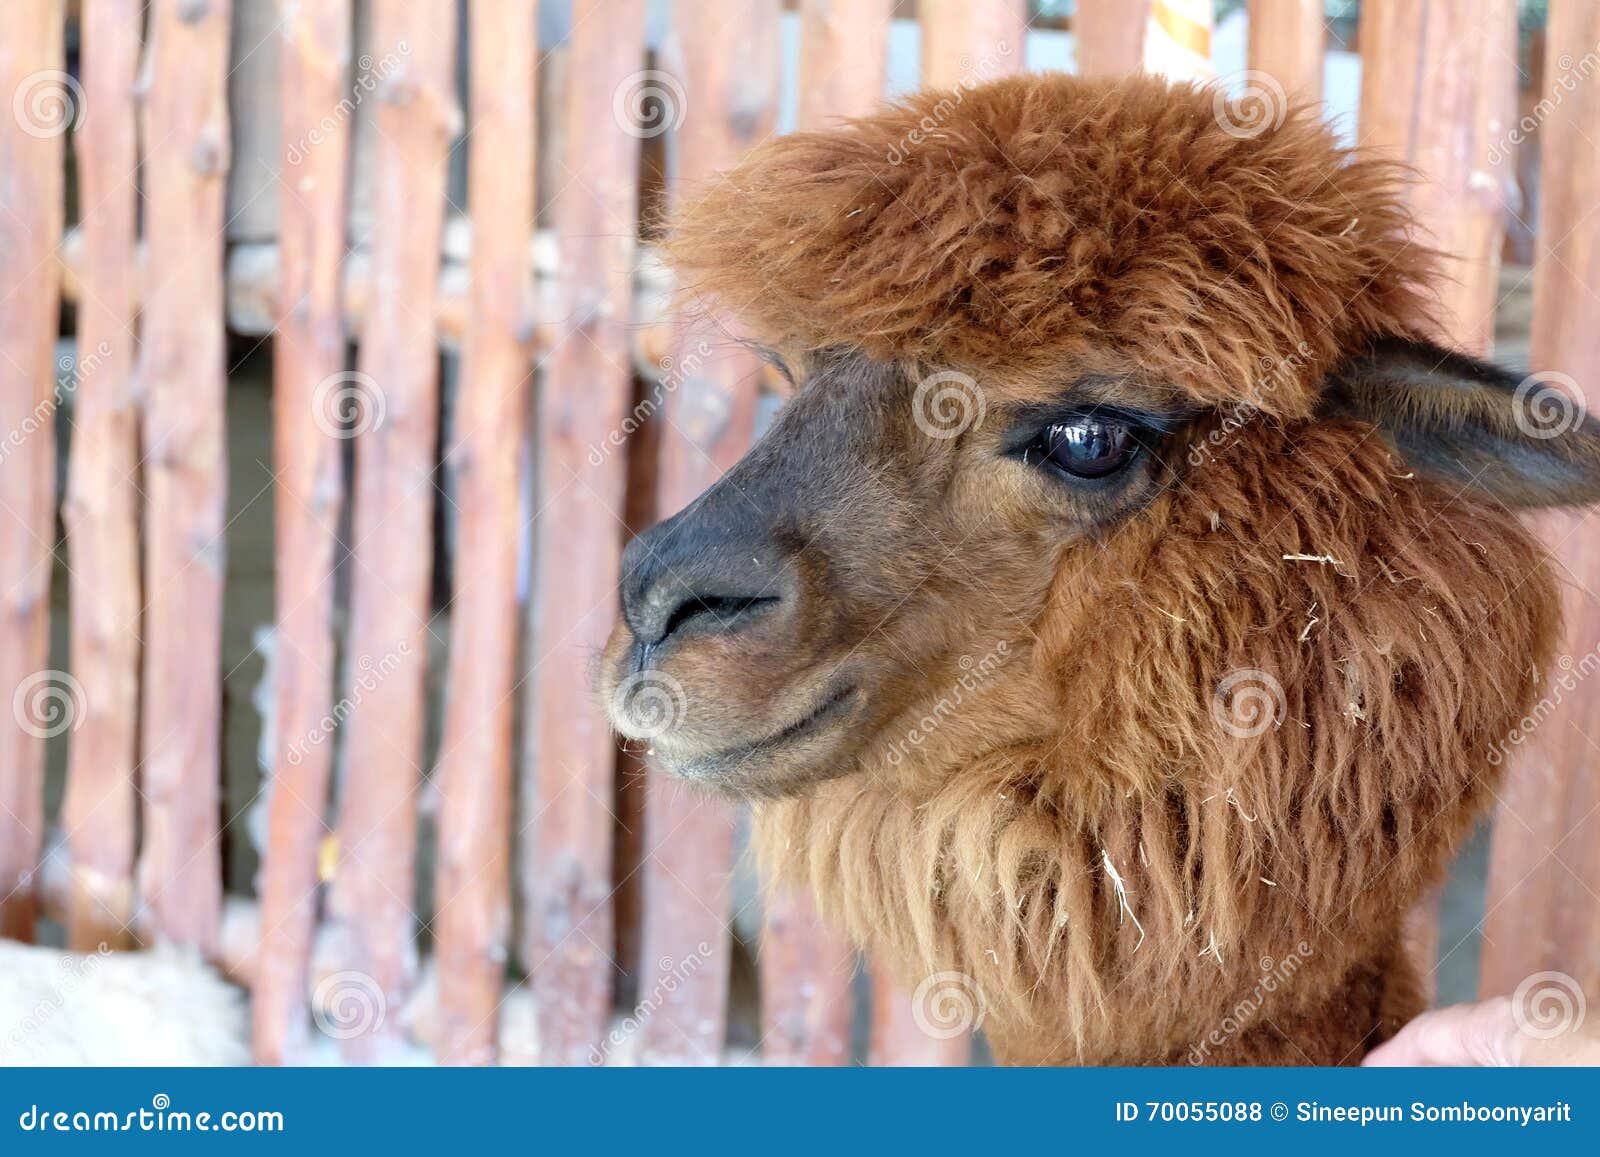 superávit Interminable Rebelión Alpaca del pelo de Brown foto de archivo. Imagen de mentira - 70055088